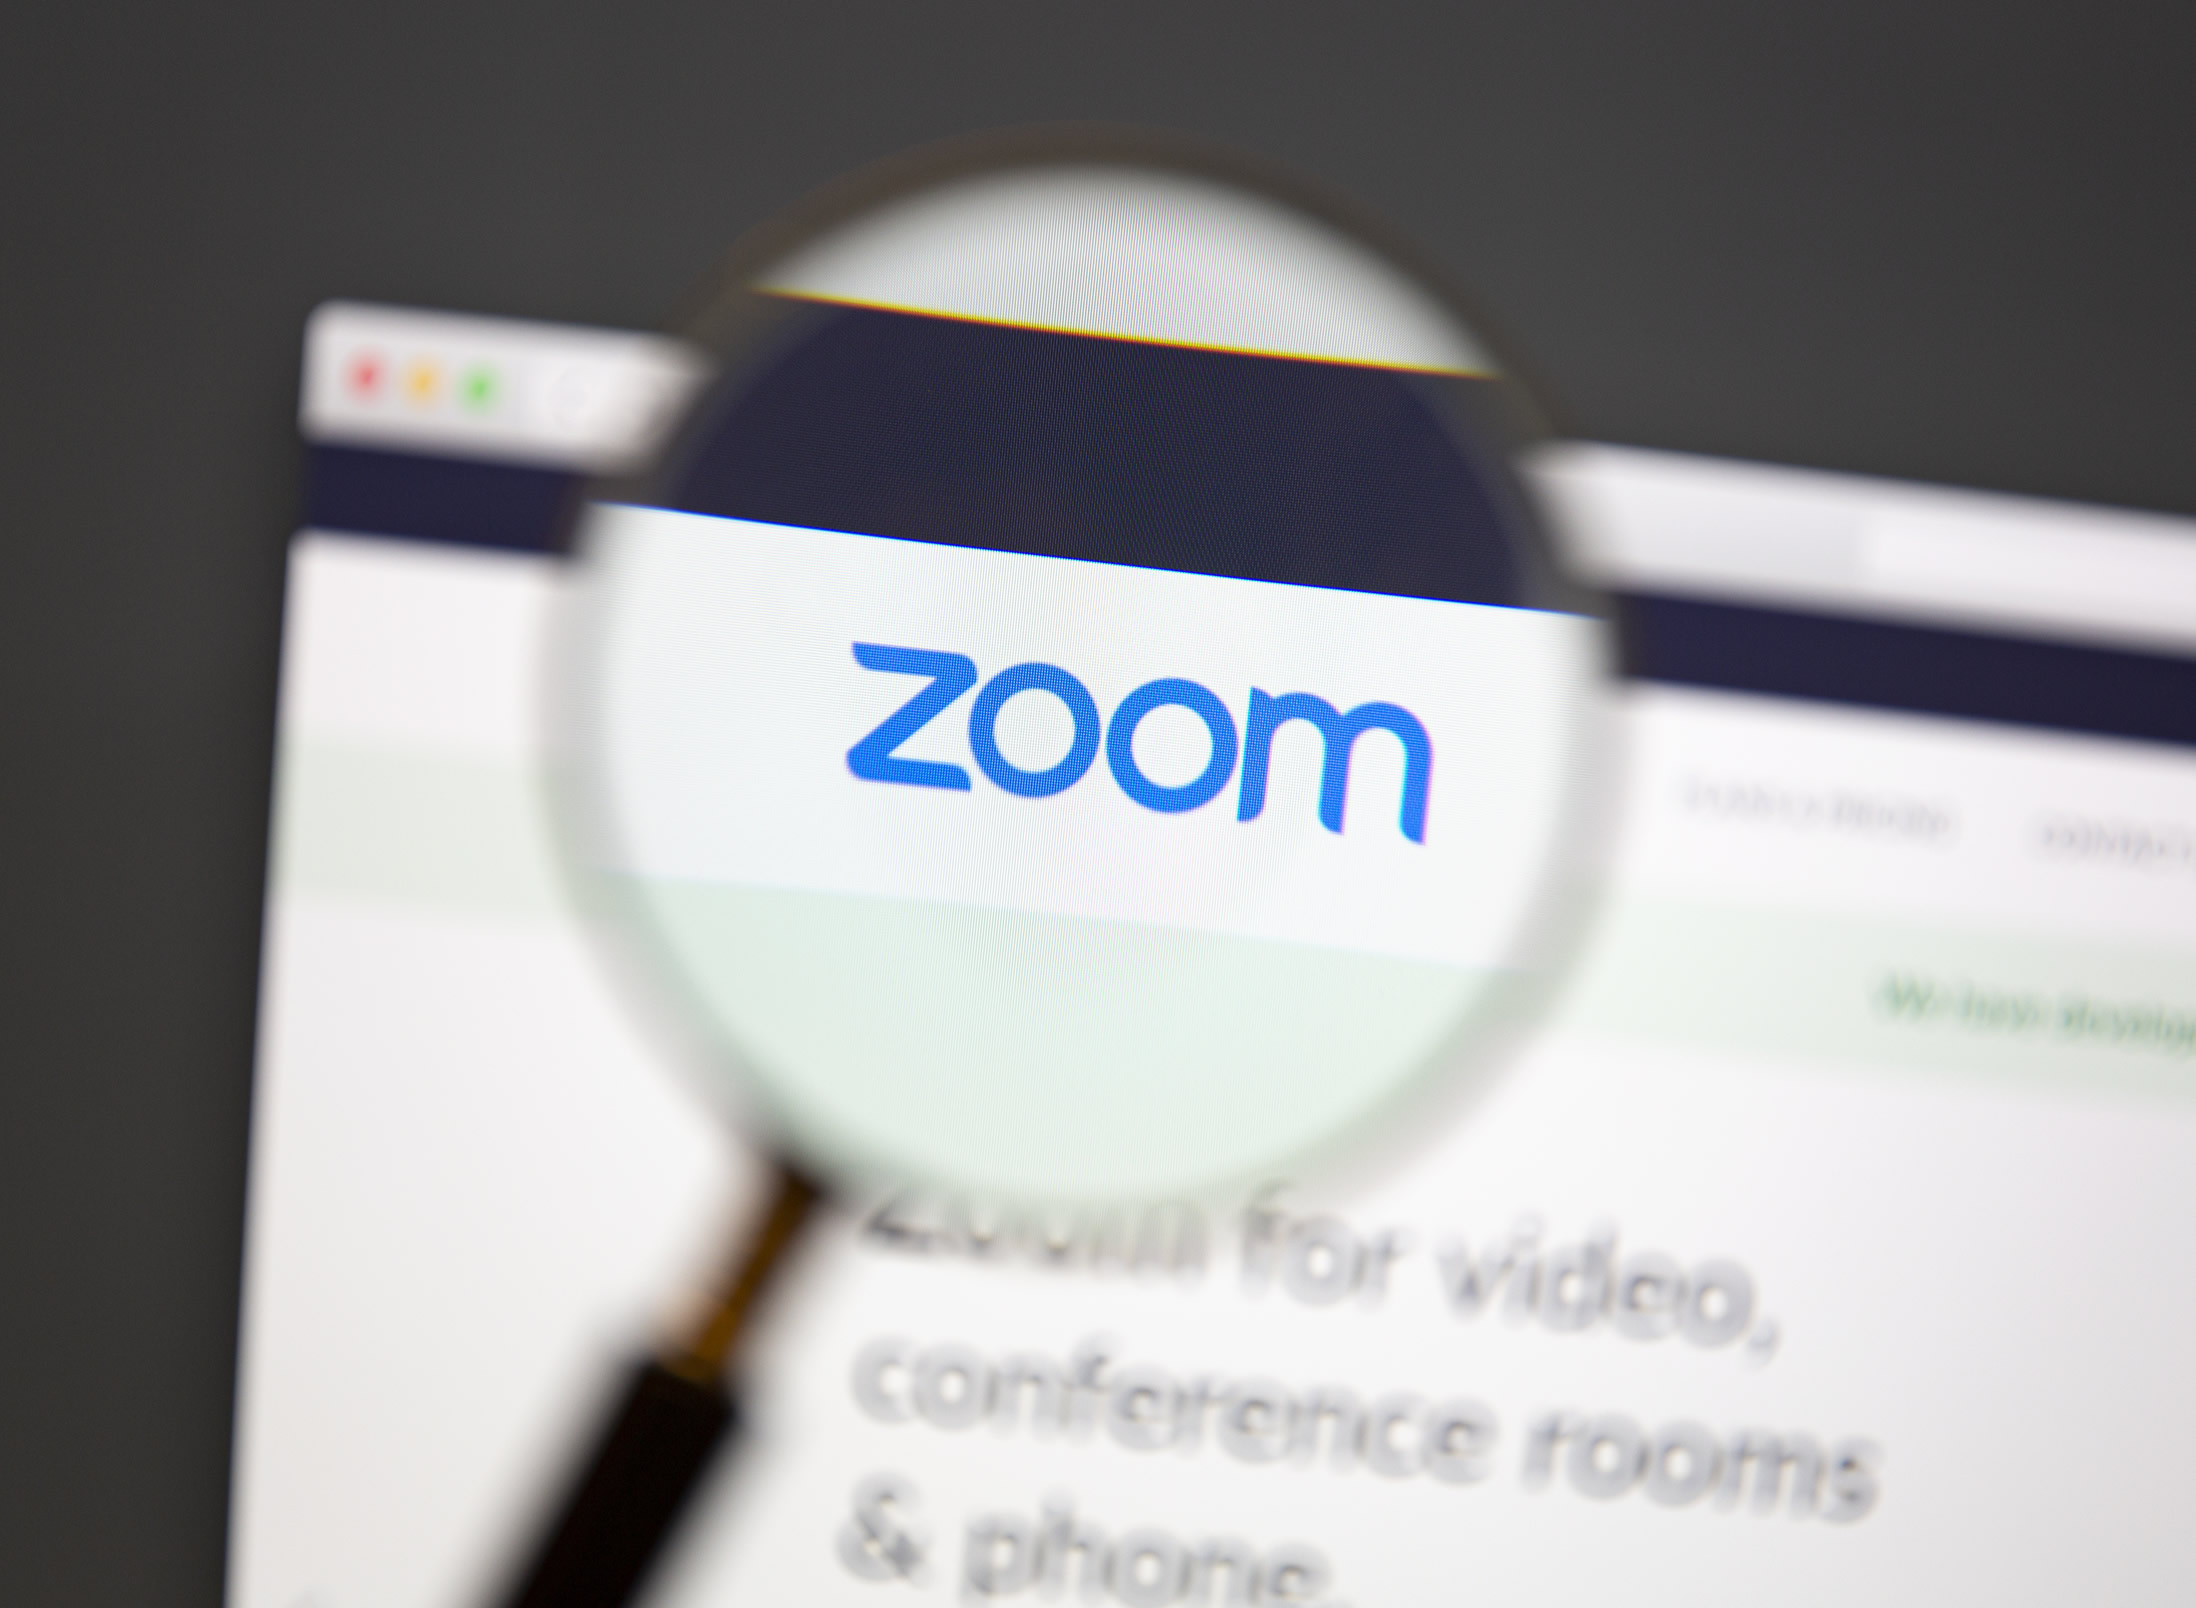 【習い事教室向け】Zoom(ズーム)を使ったオンラインレッスンの始めかた